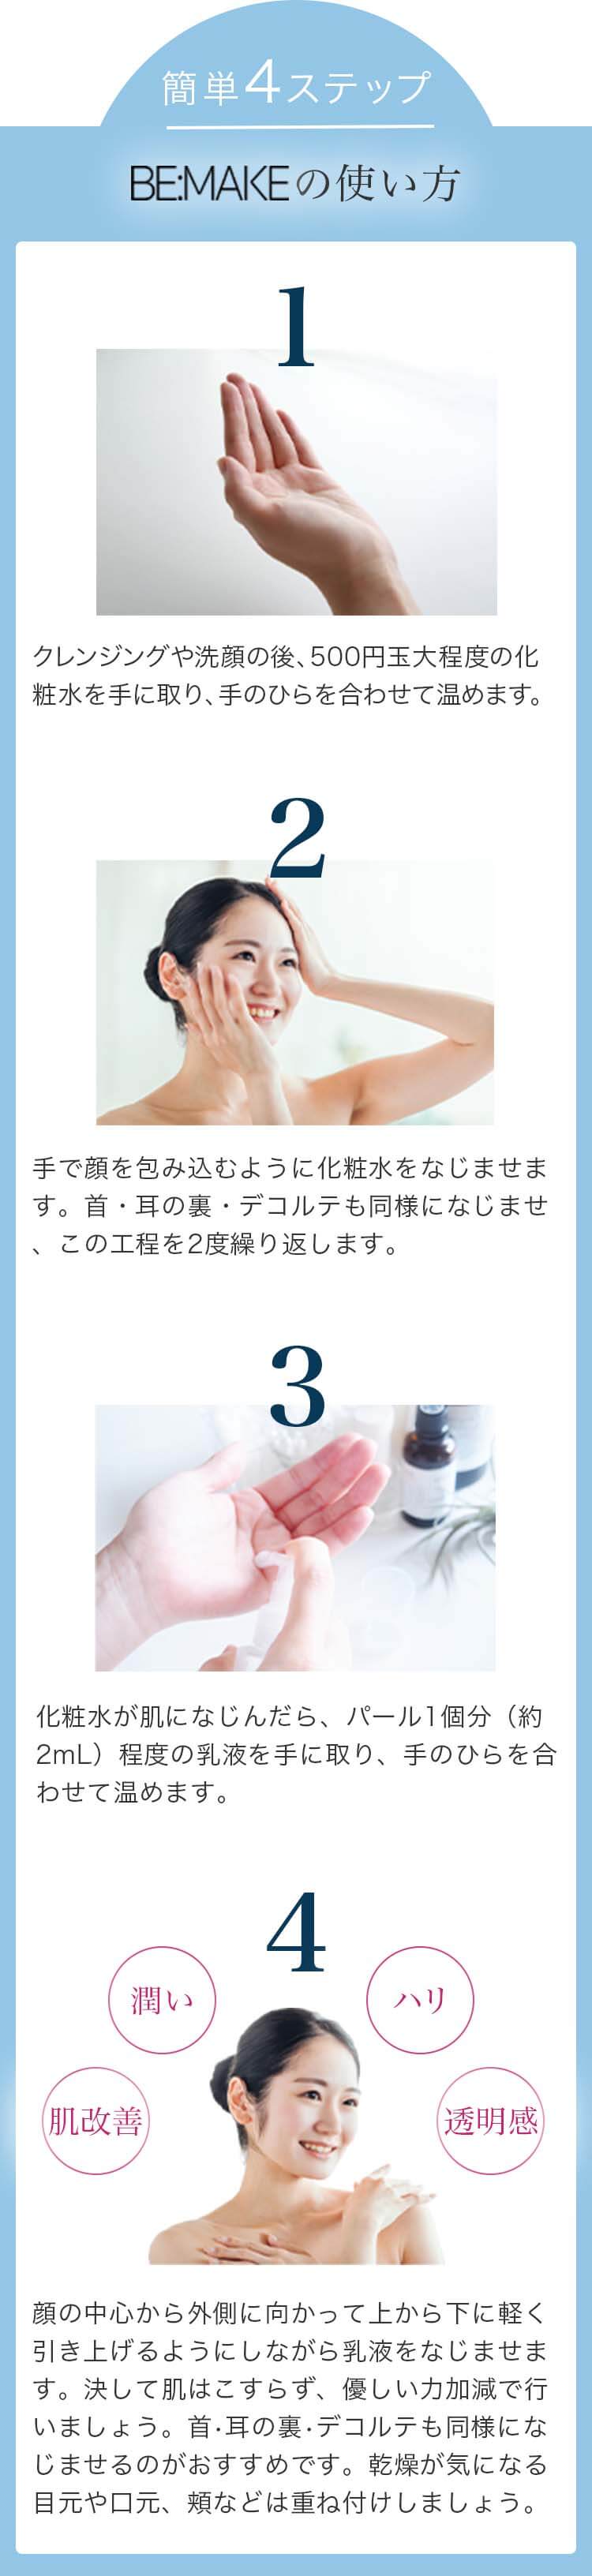 簡単4ステップ BE:MAKEの使い方 1.クレンジングや洗顔の後、500円玉大程度の化粧水を手に取り、手のひらを合わせて温めます。 2.手で顔を包み込むように化粧水をなじませます。首・耳の裏・デコルテも同様になじませ、この工程を2度繰り返します。 3.化粧水が肌になじんだら、パール1個分（約2mL）程度の乳液を手に取り、手のひらを合わせて温めます。 4.顔の中心から外側に向かって上から下に軽く引き上げるようにしながら乳液をなじませます。決して肌はこすらず、優しい力加減で行いましょう。首・耳の裏・デコルテも同様になじませるのがおすすめです。乾燥が気になる目元や口元、頬などは重ね付けしましょう。